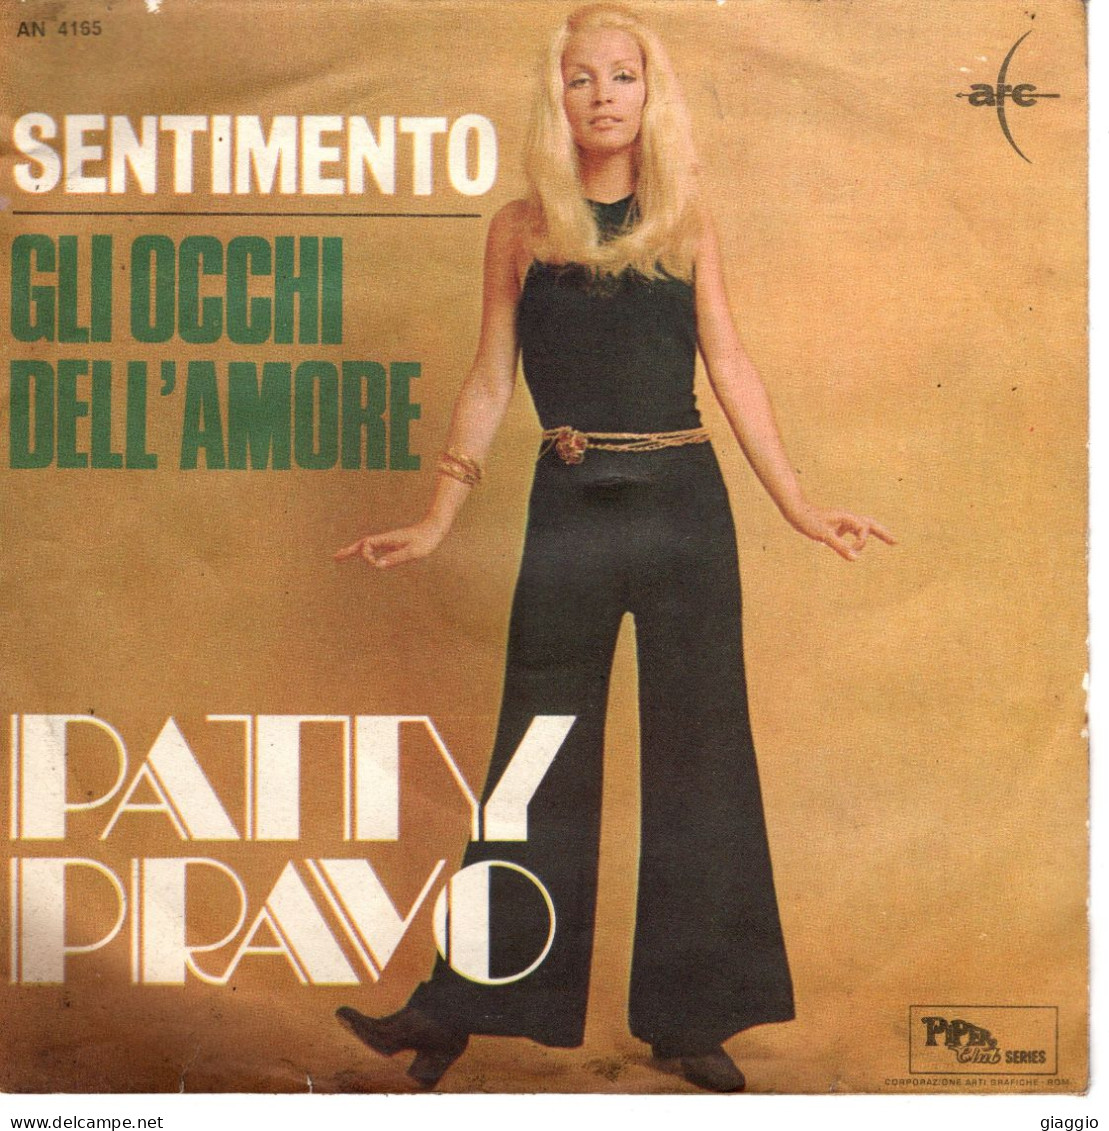 °°° 524) 45 GIRI - PATTY PRAVO - GLI OCCHI DELL'AMORE / SENTIMENTO °°° - Sonstige - Italienische Musik